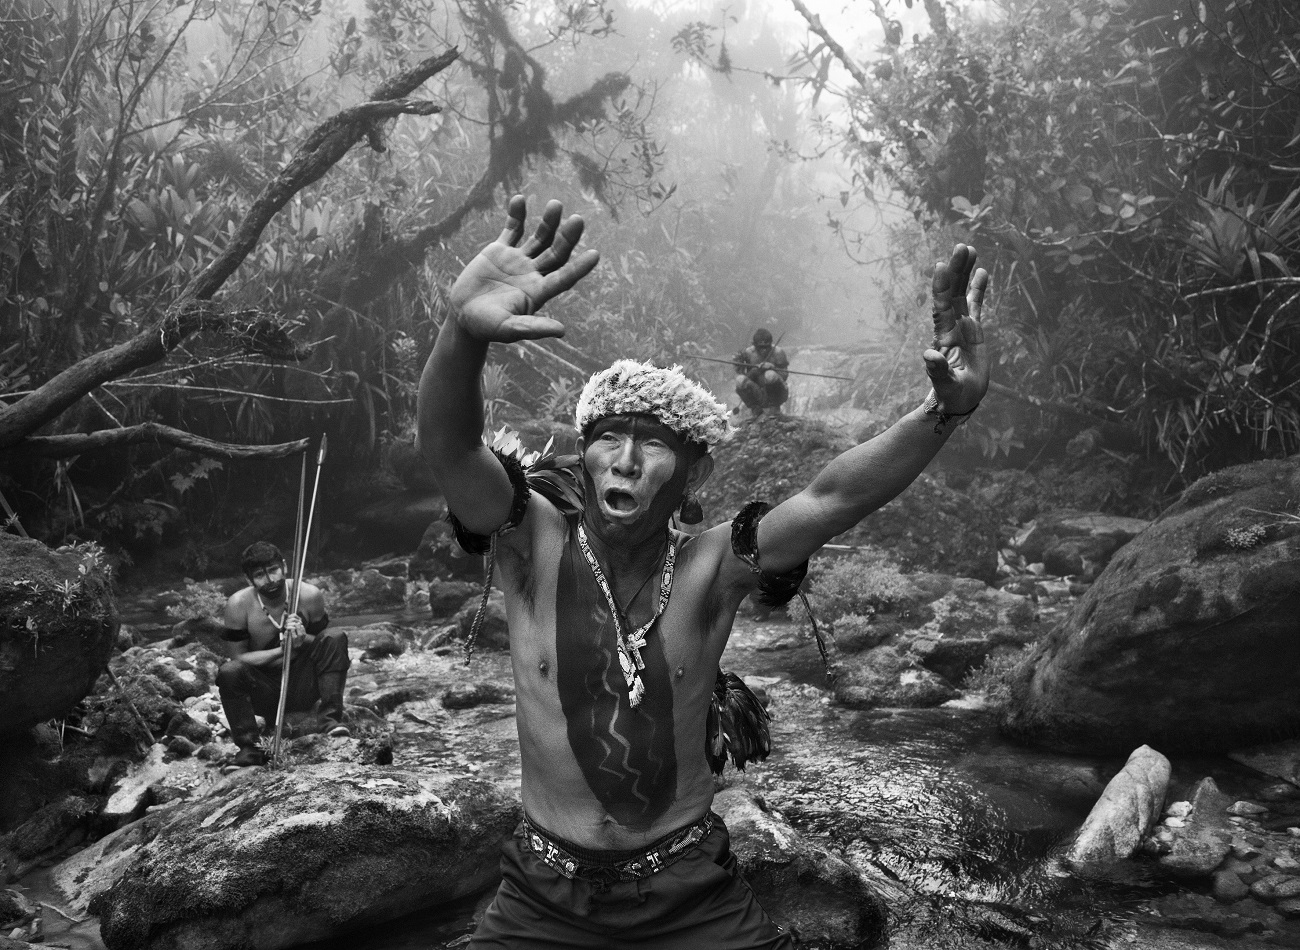 Chamán yanomami interactúa con los espíritus antes del ascenso al Pico da Neblina, estado de Amazonas, Brasil, 2014. © SEBASTIÃO SALGADO